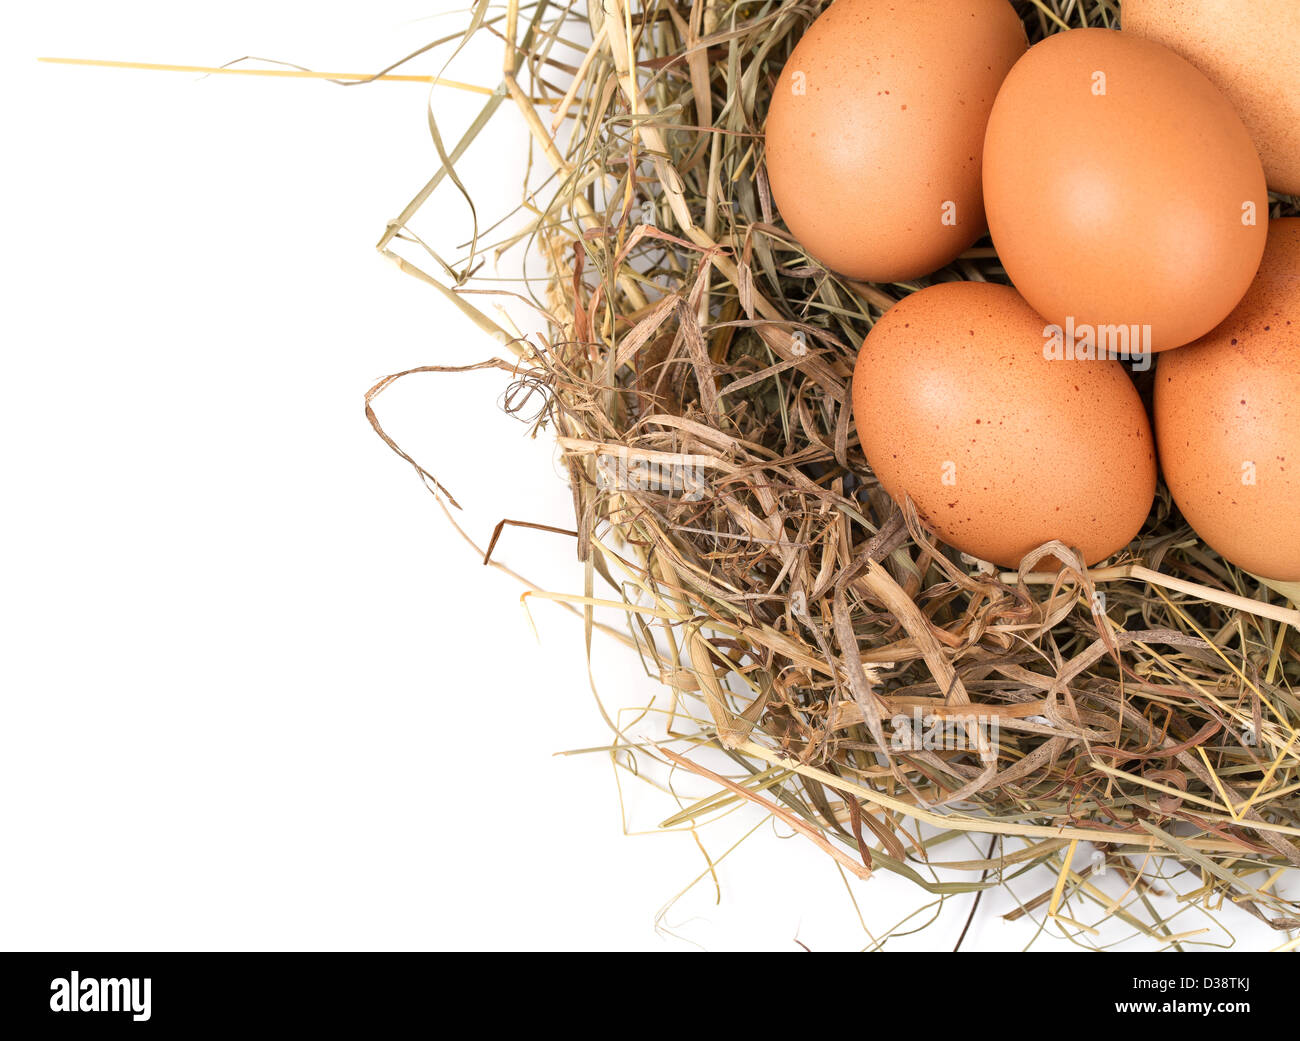 Braunen Eiern in einem Nest auf einem weißen Hintergrund isoliert Stockfoto